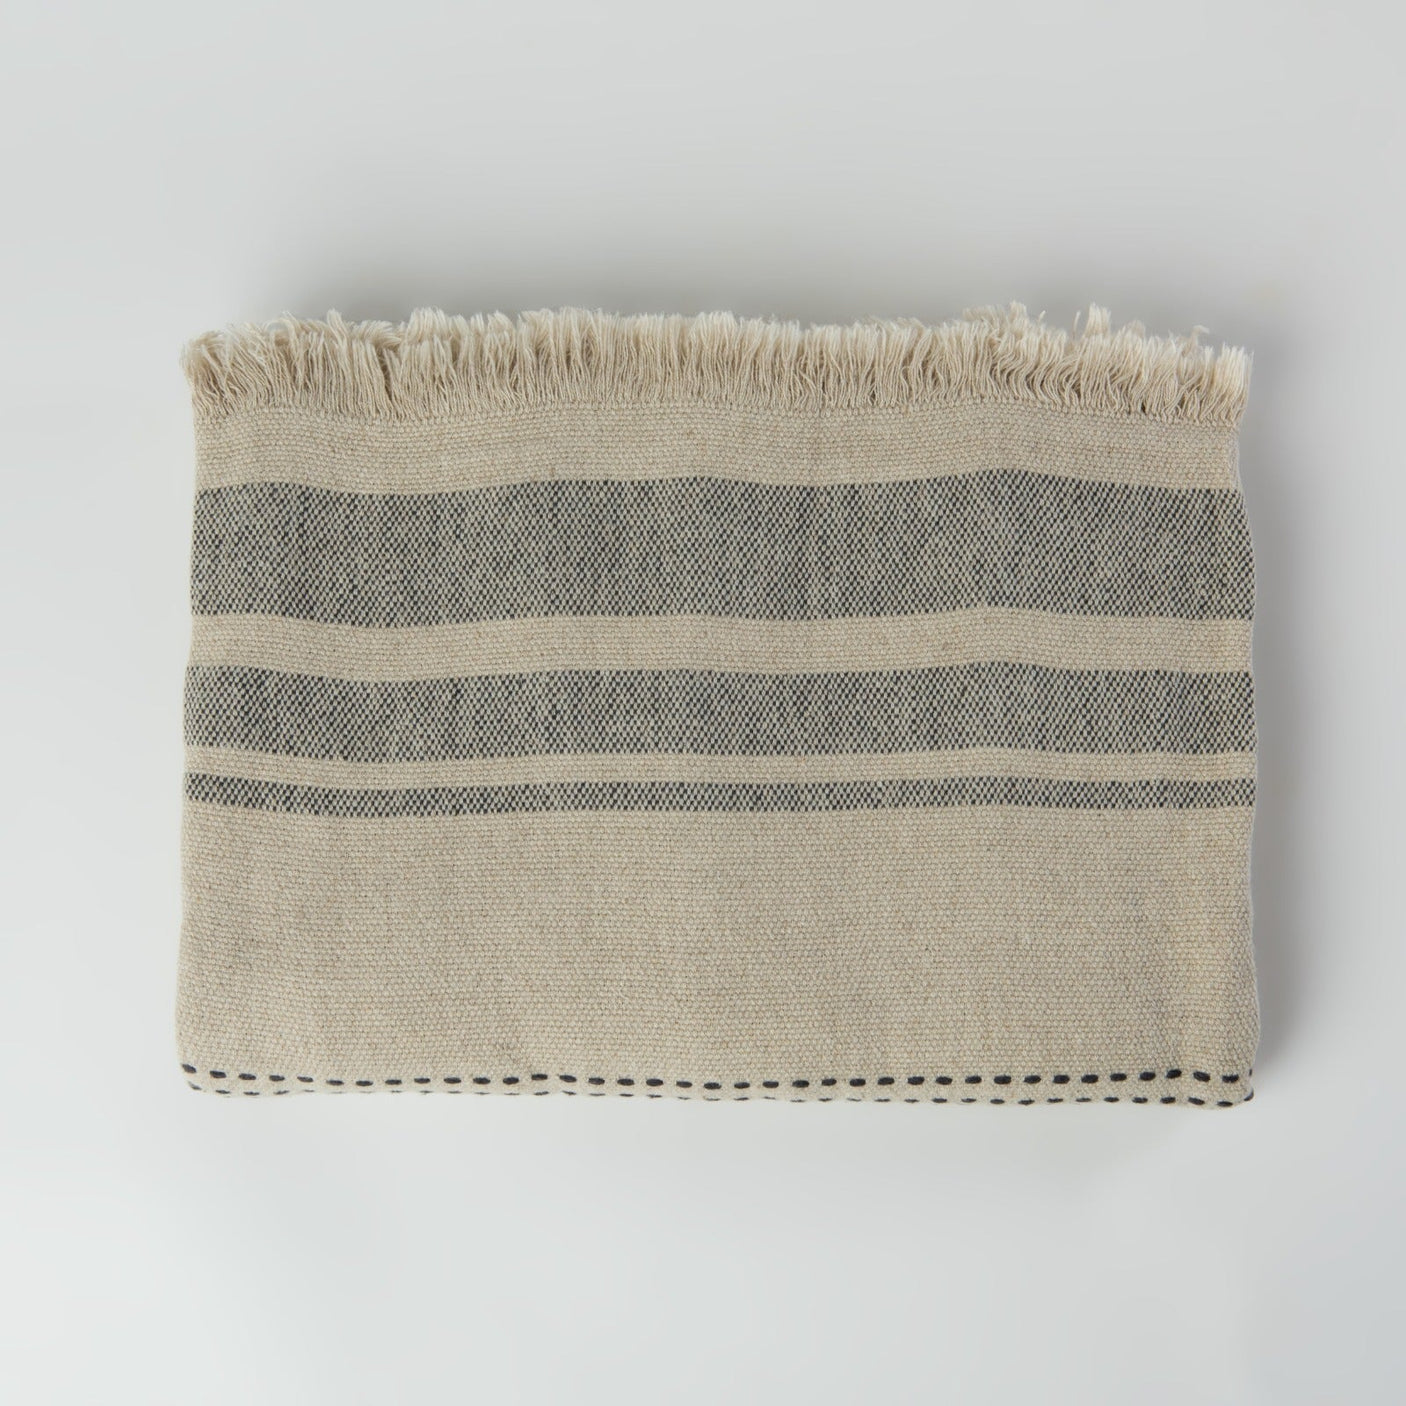 The Aras Linen Throw Blanket